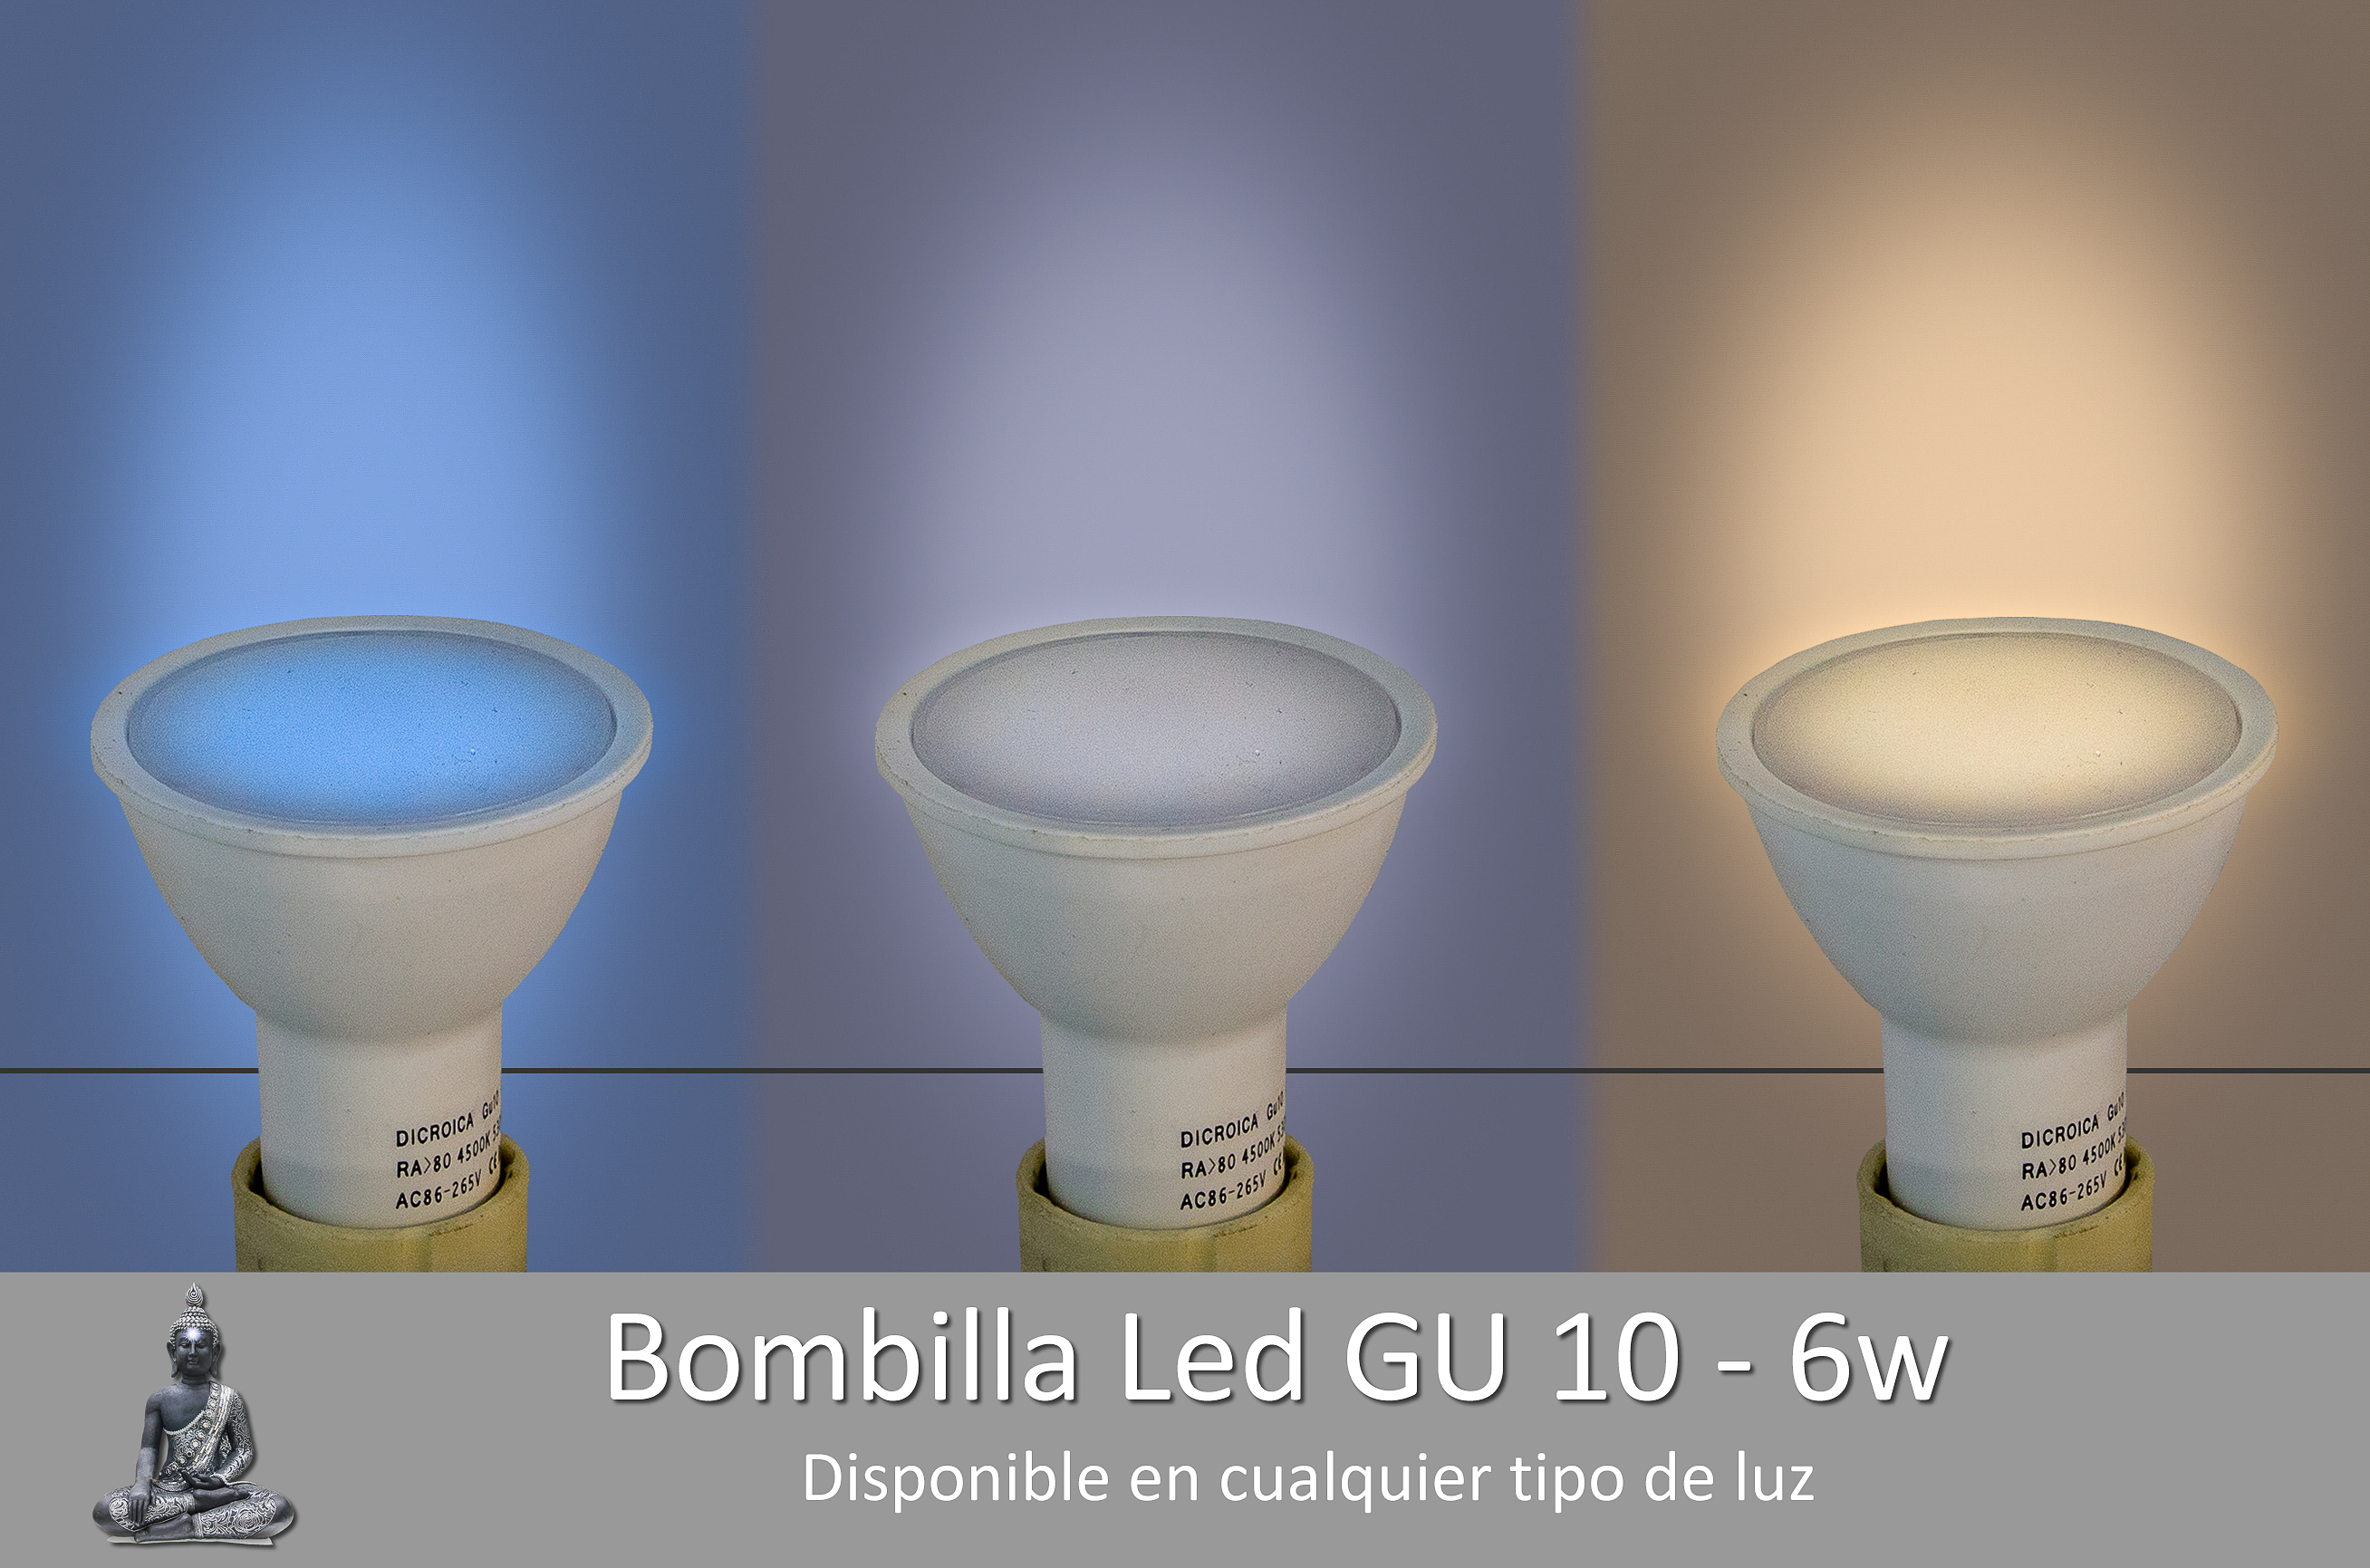 Bombilla Led GU10 - 6W todo los tipos de luz